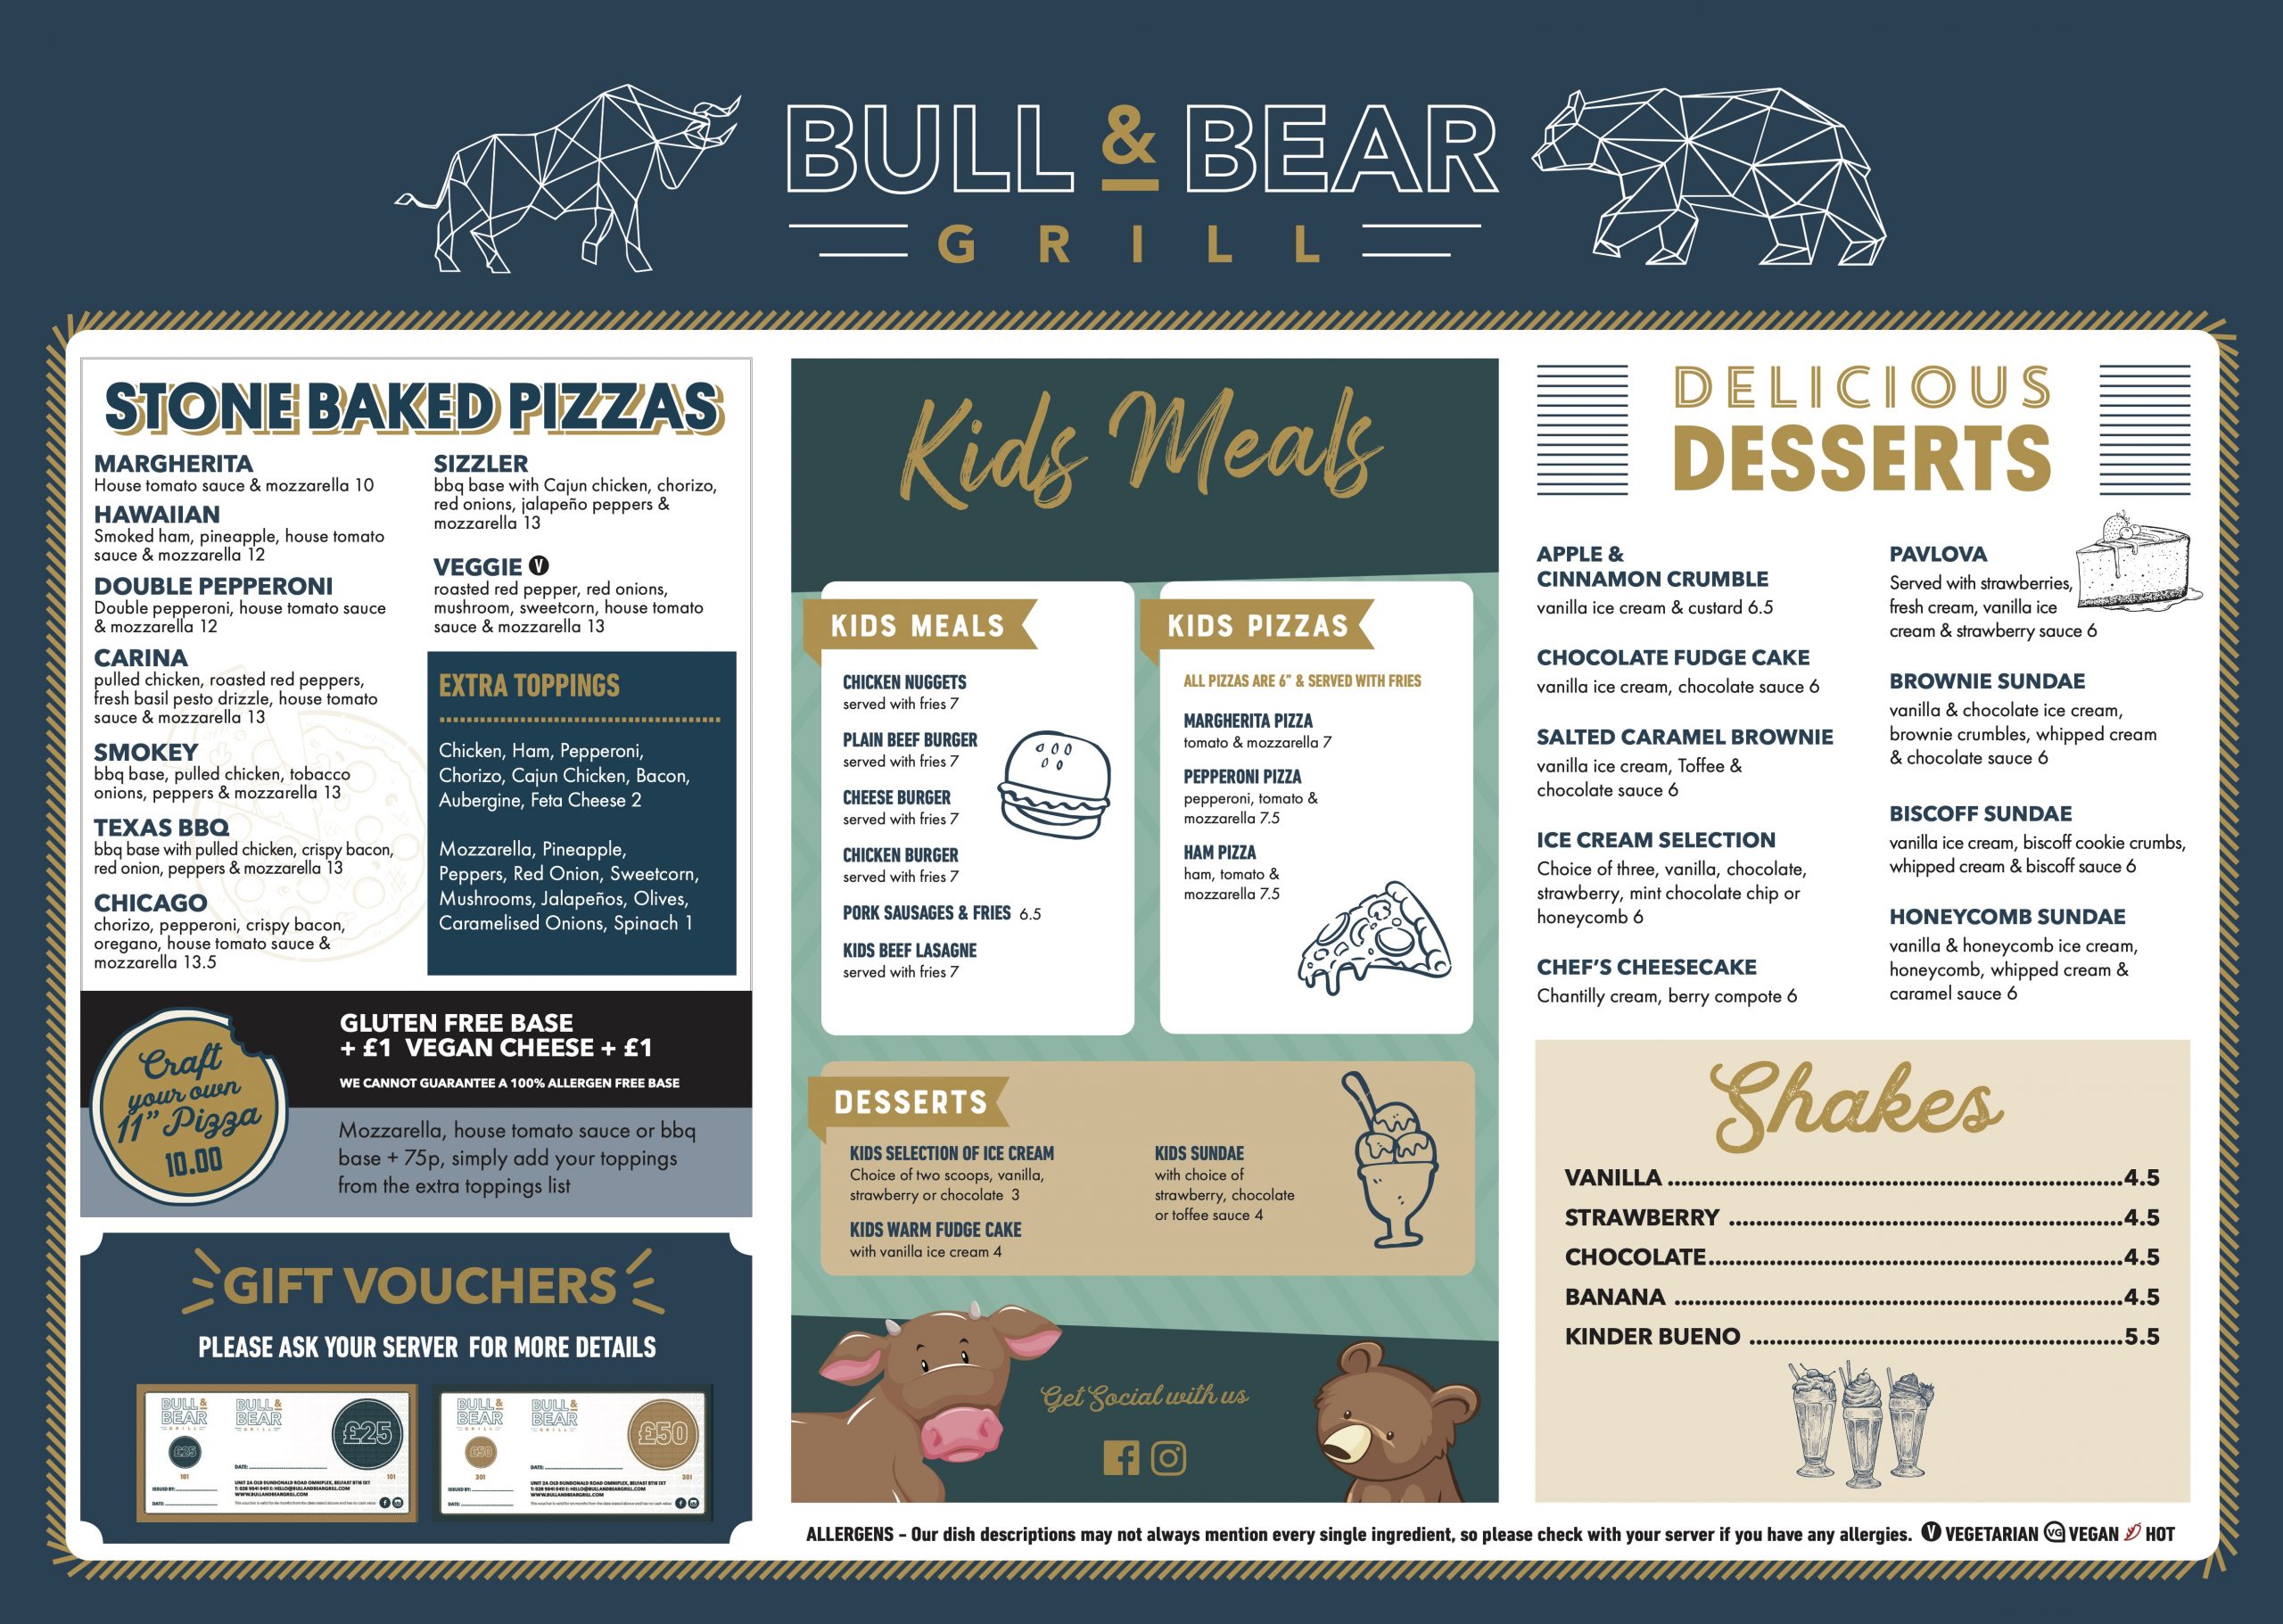 Bull and bear menu